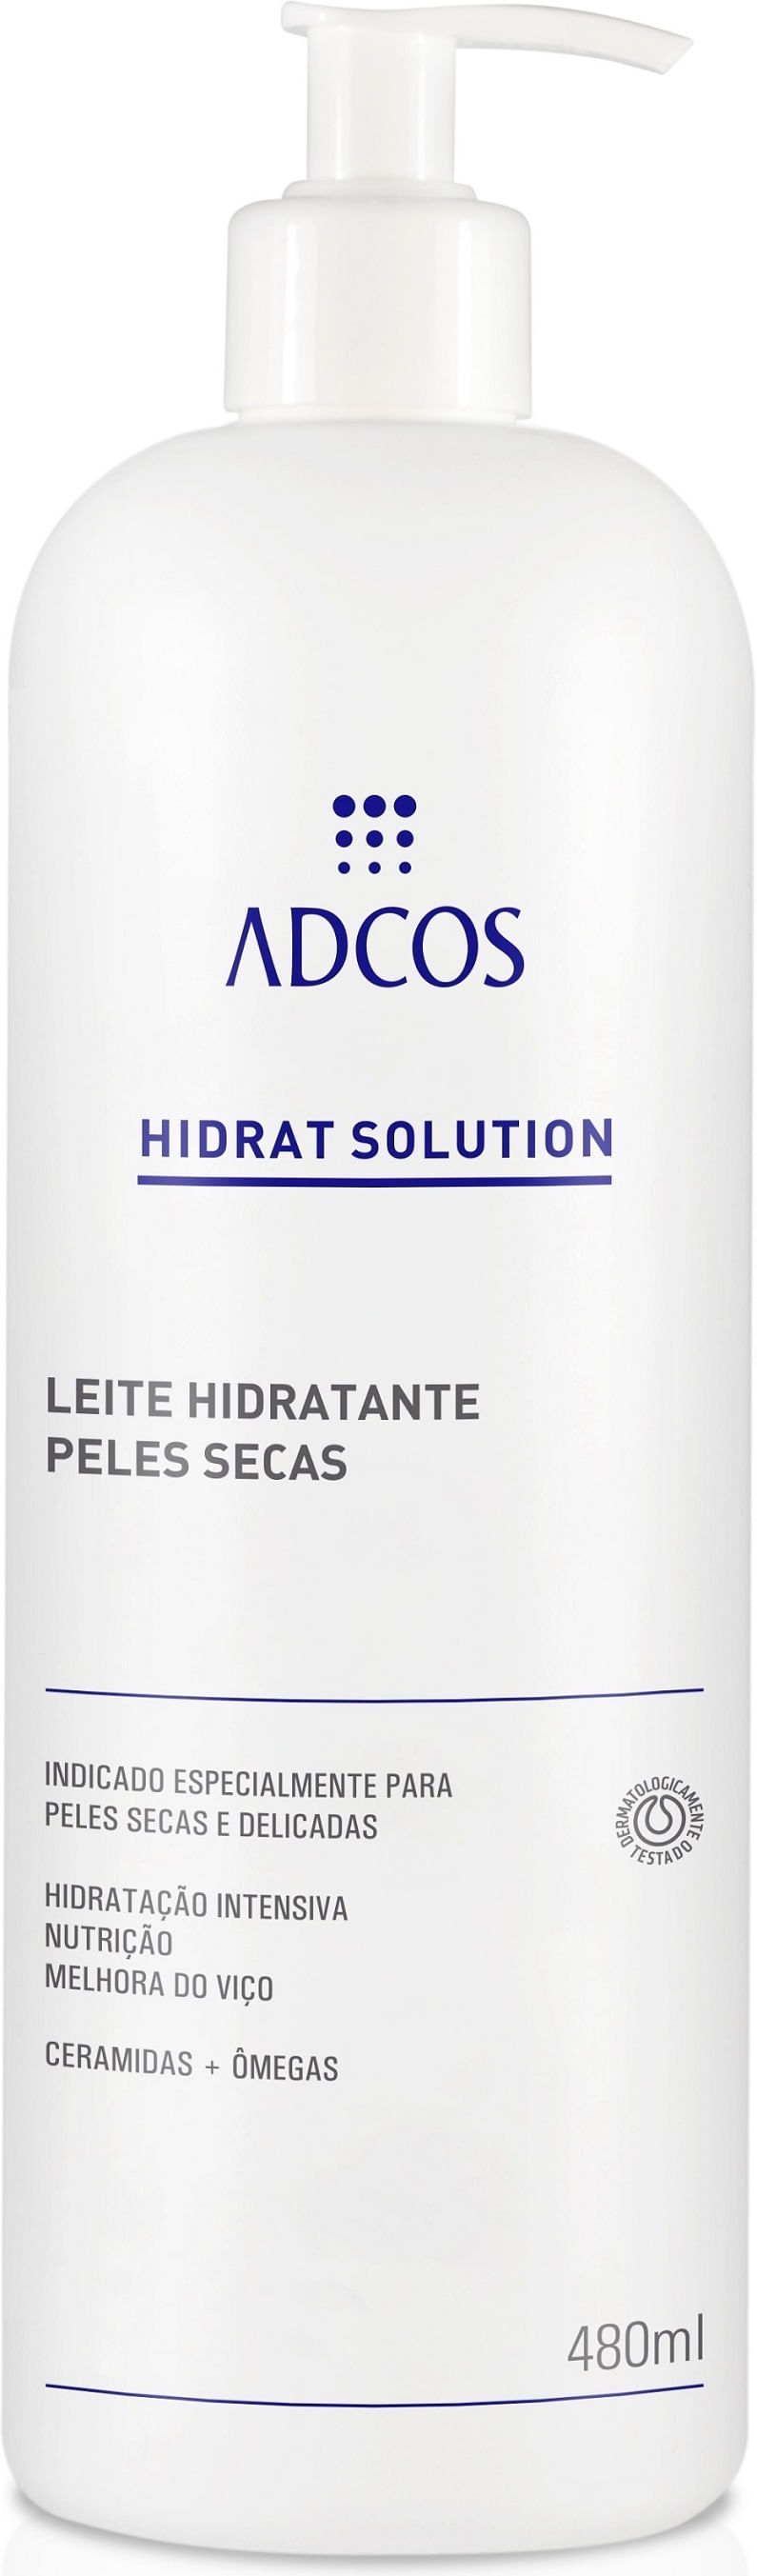 hidratsolution_leite-hidratante-peles-secas_500ml